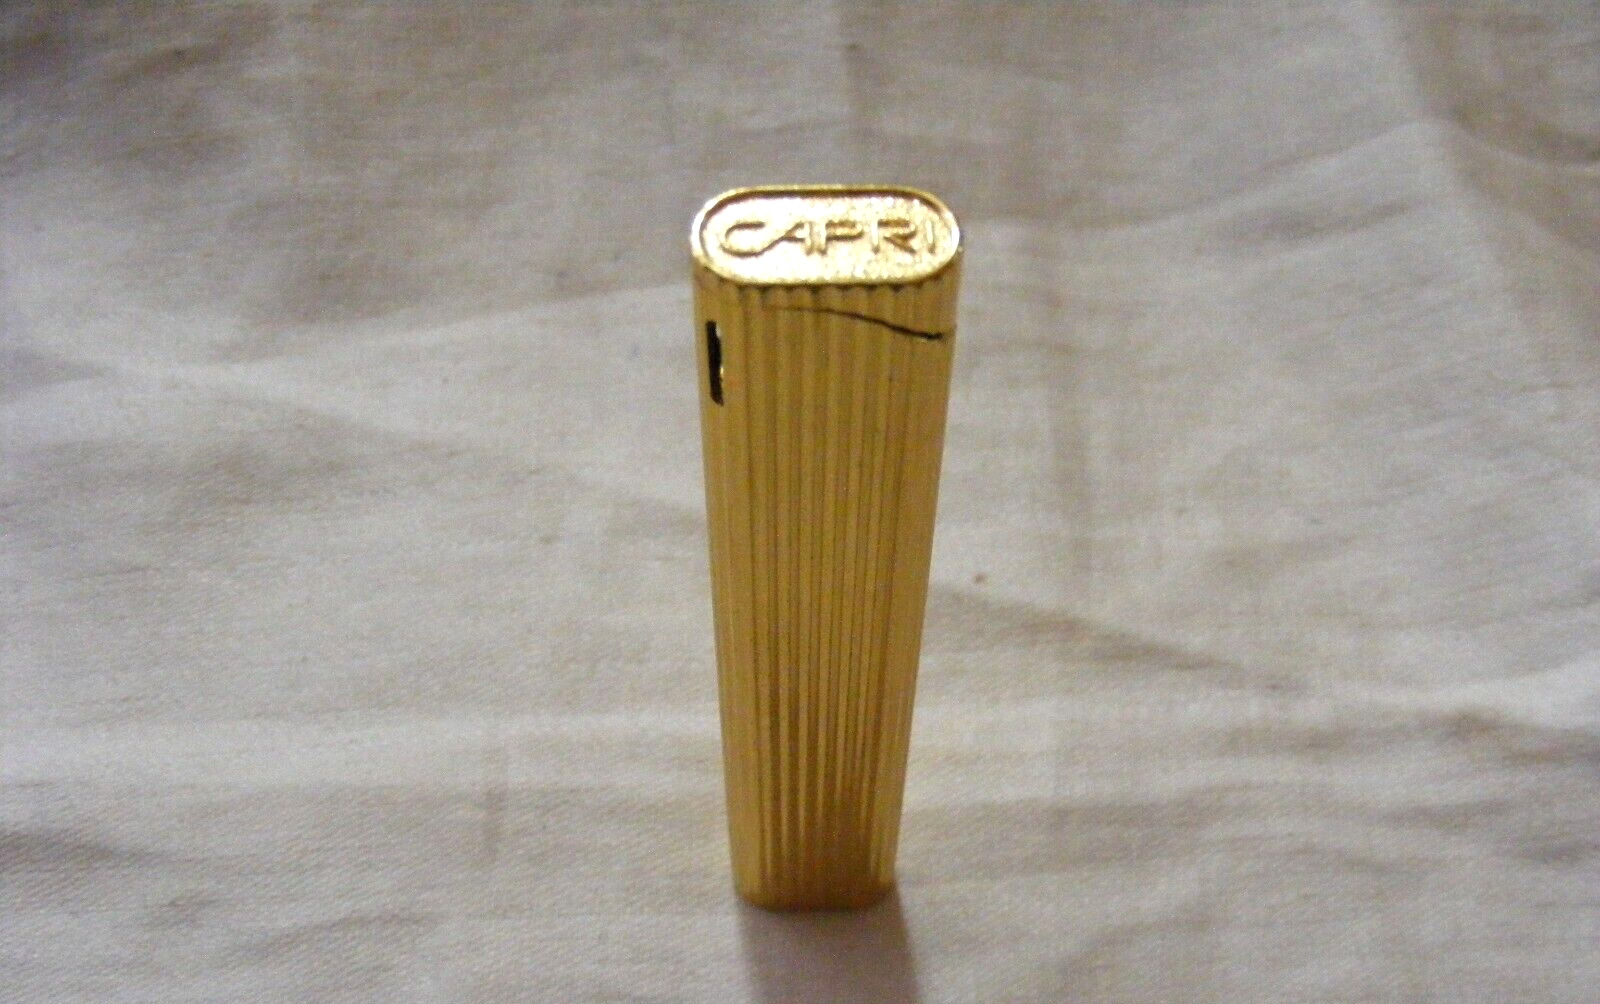 Vintage Capri Promotional Ciggerette Lighter 17-b 